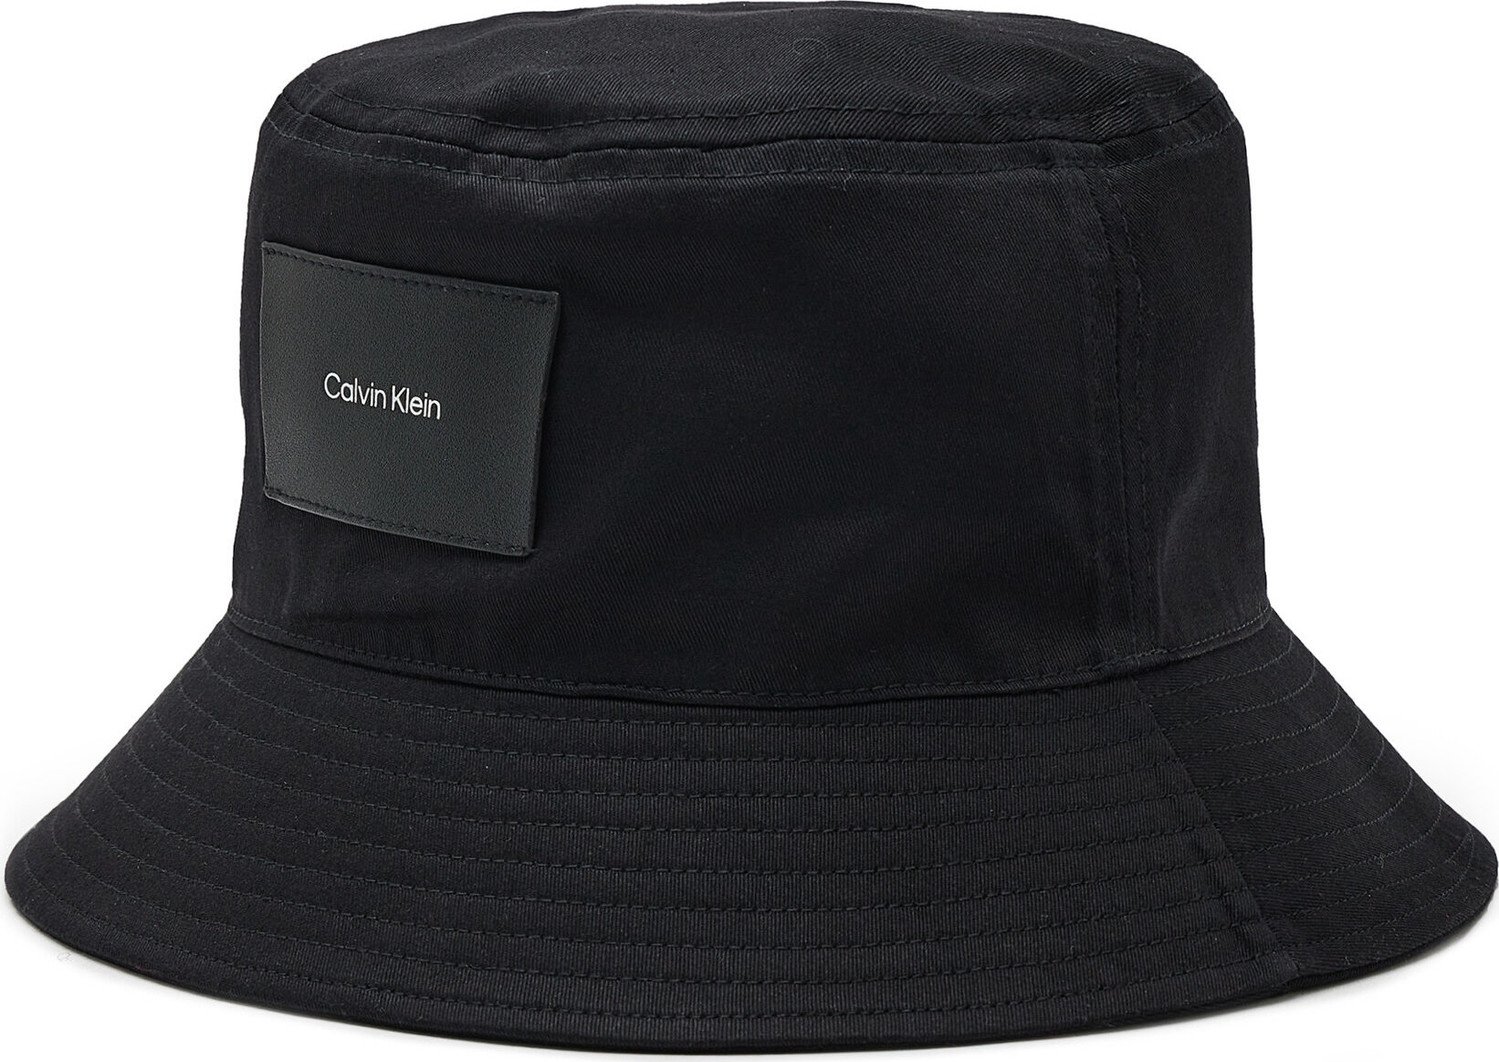 Klobouk Calvin Klein Bucket K50K509940 Ck Black BAX